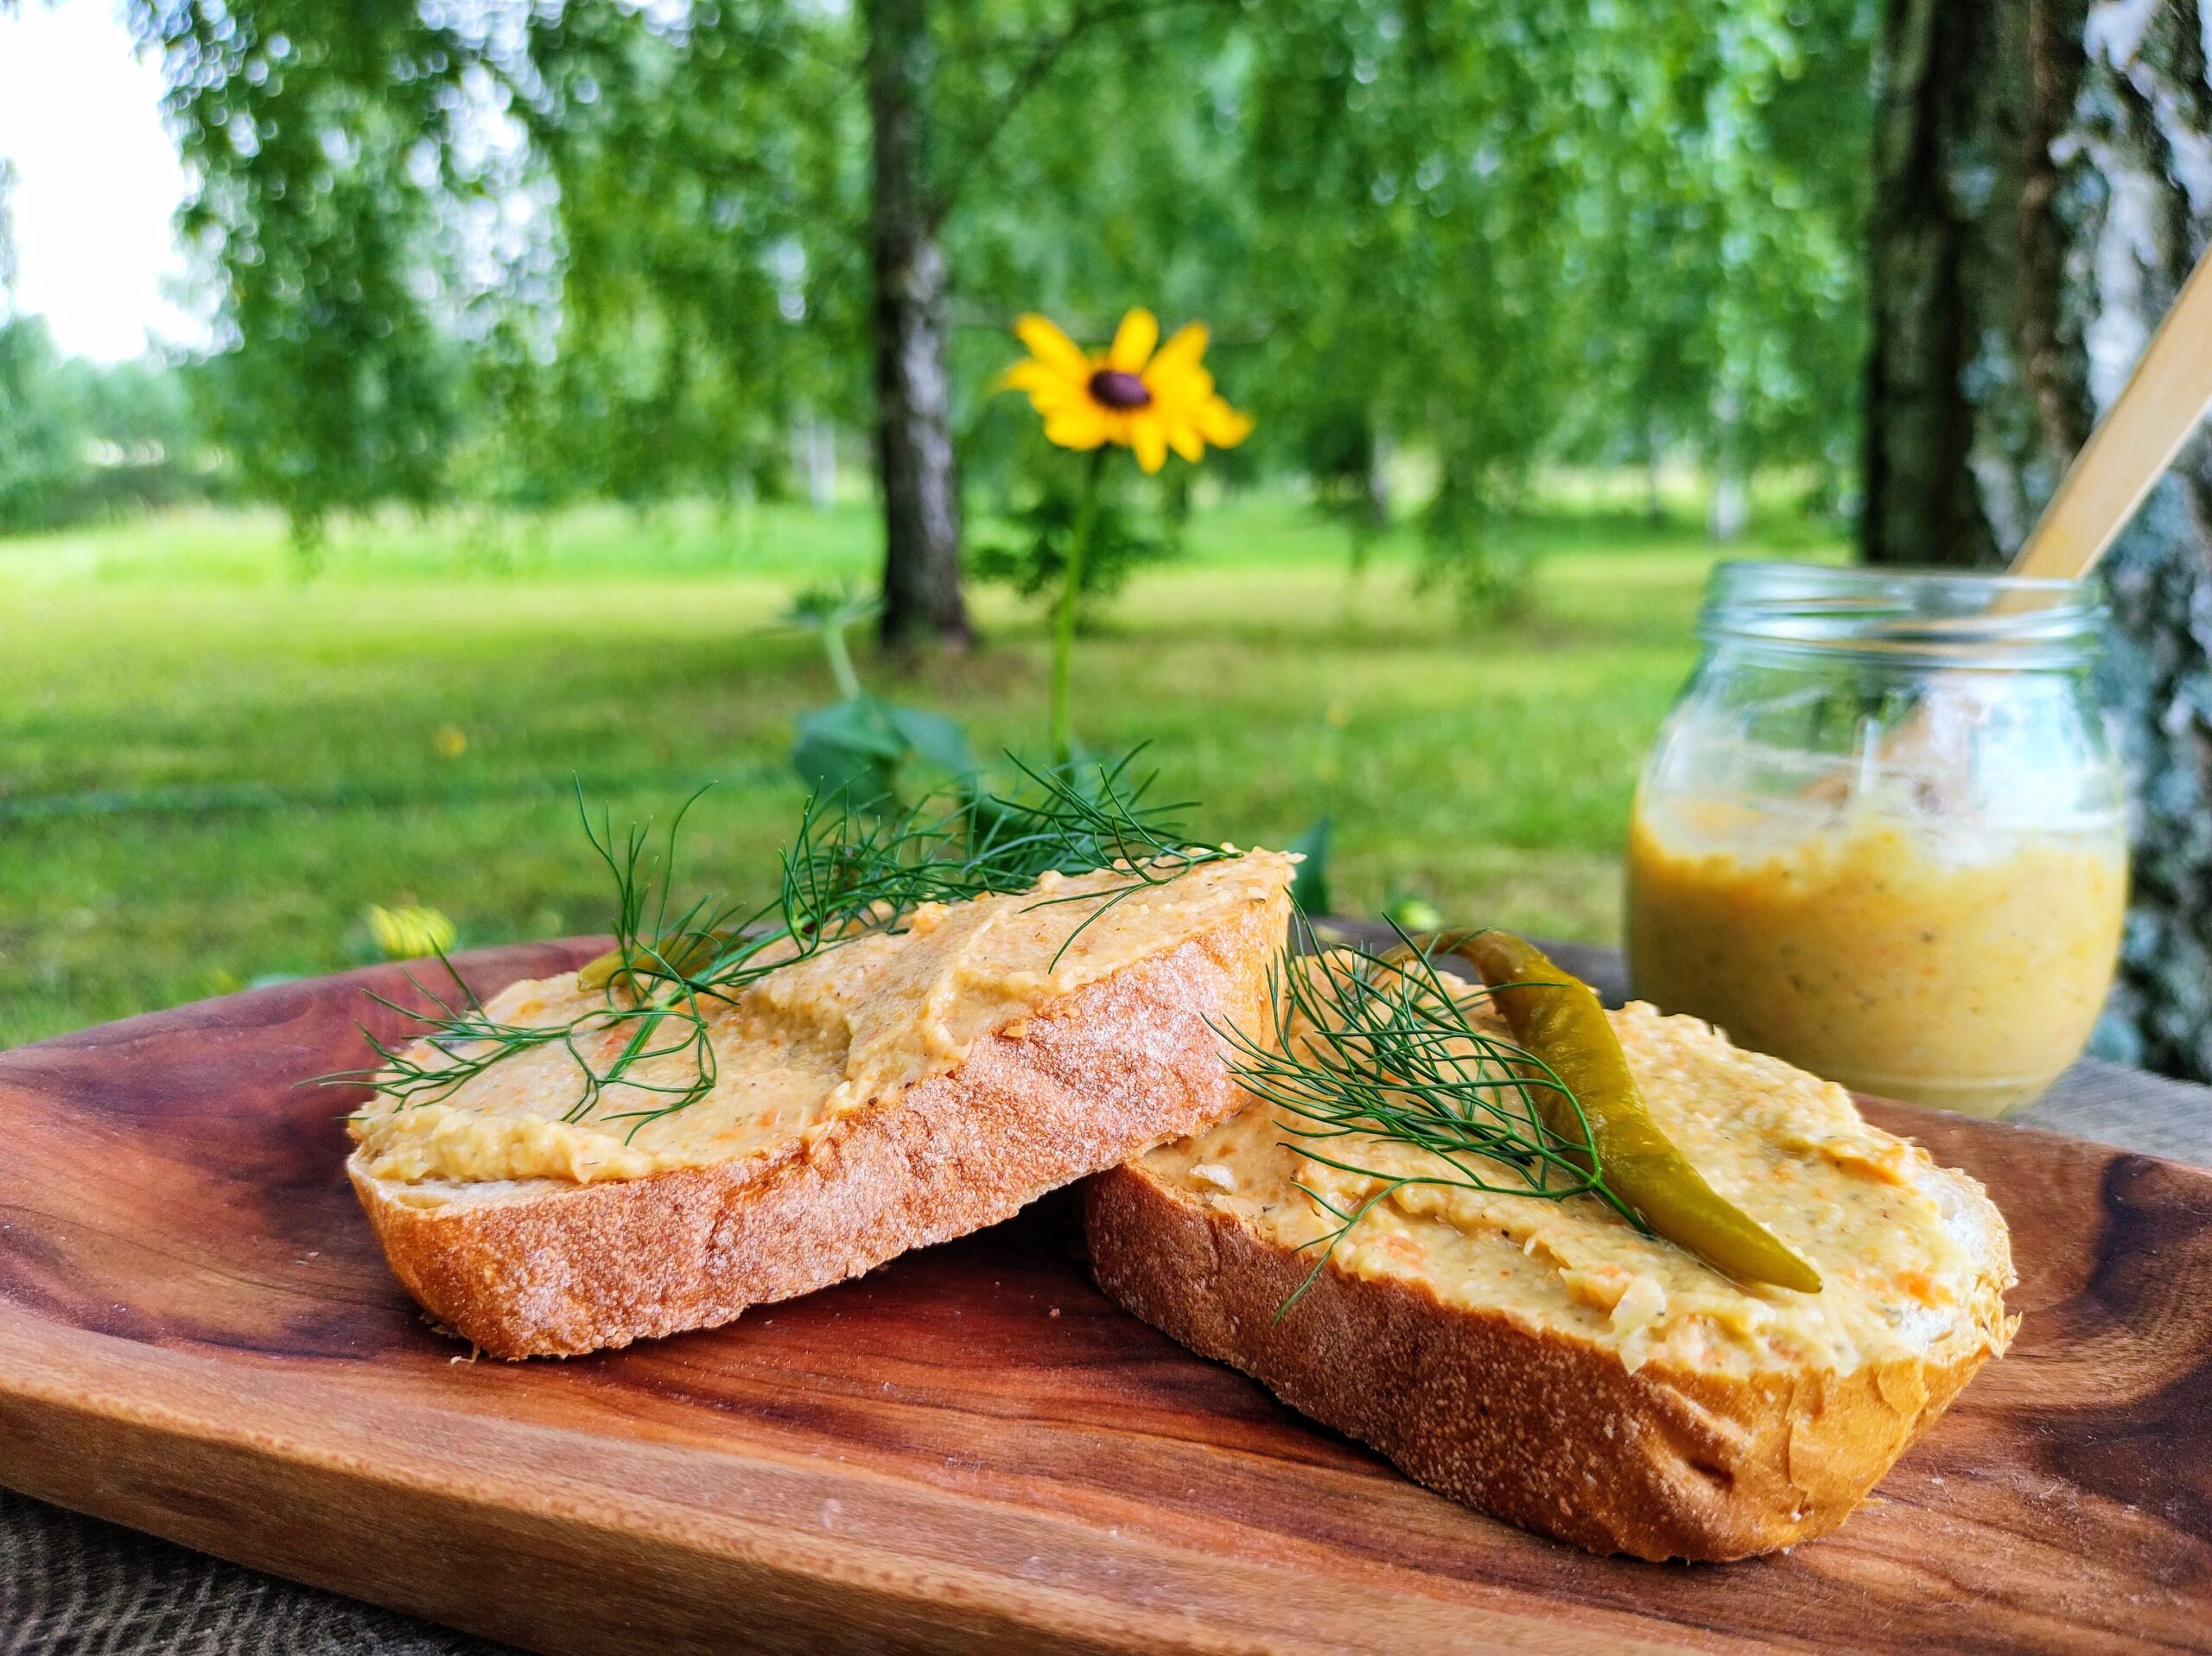 Dwie pajdy chleba z pastą pasztetową podane wśród zieleni.